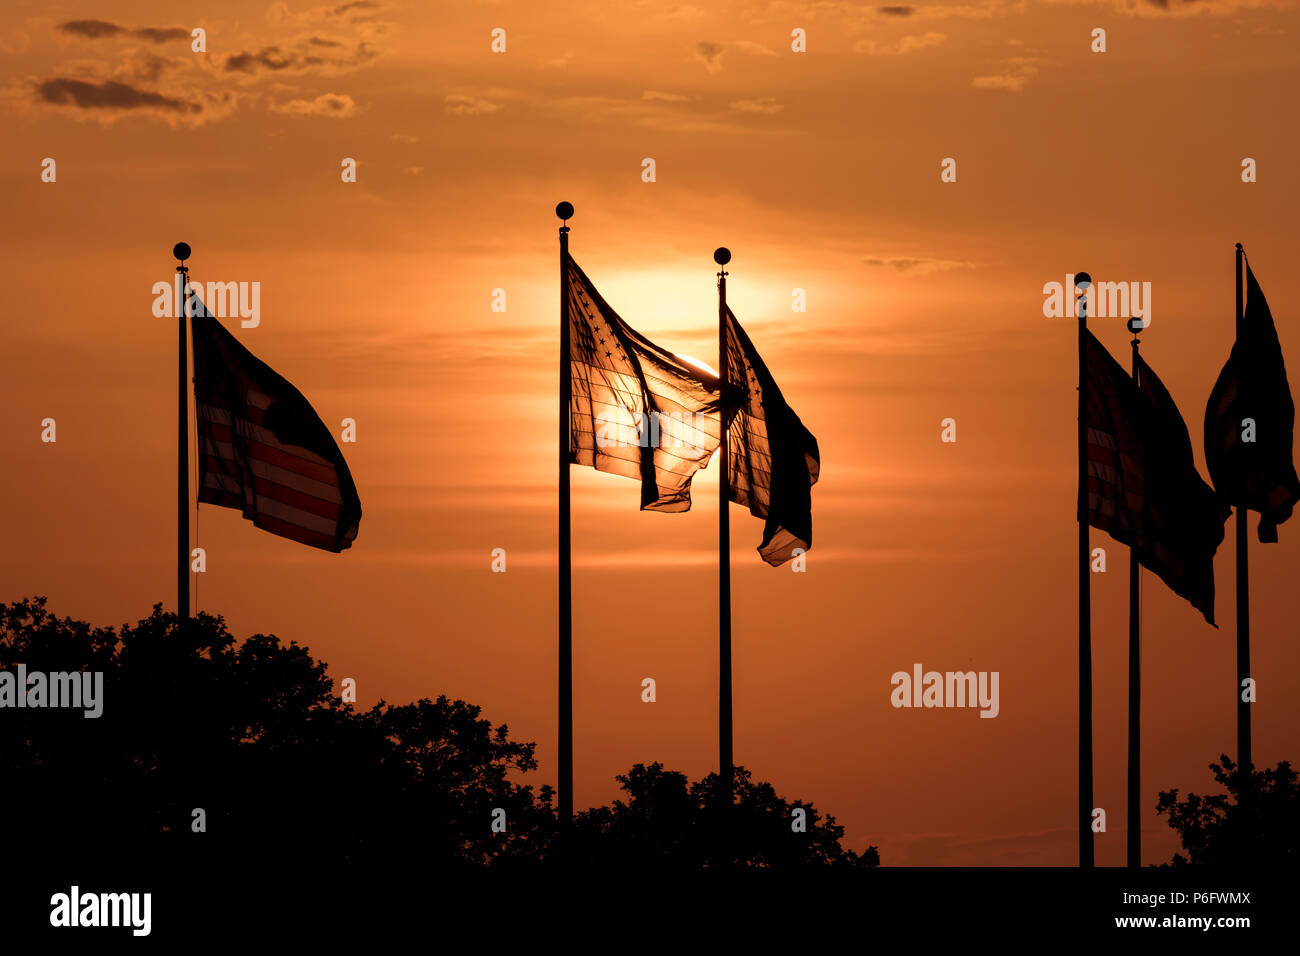 7 juin 2018, Jersey City, New Jersey, USA - Groupe des drapeaux américains au coucher du soleil, le parc d'état de Liberty Nouveau Jerssey Banque D'Images